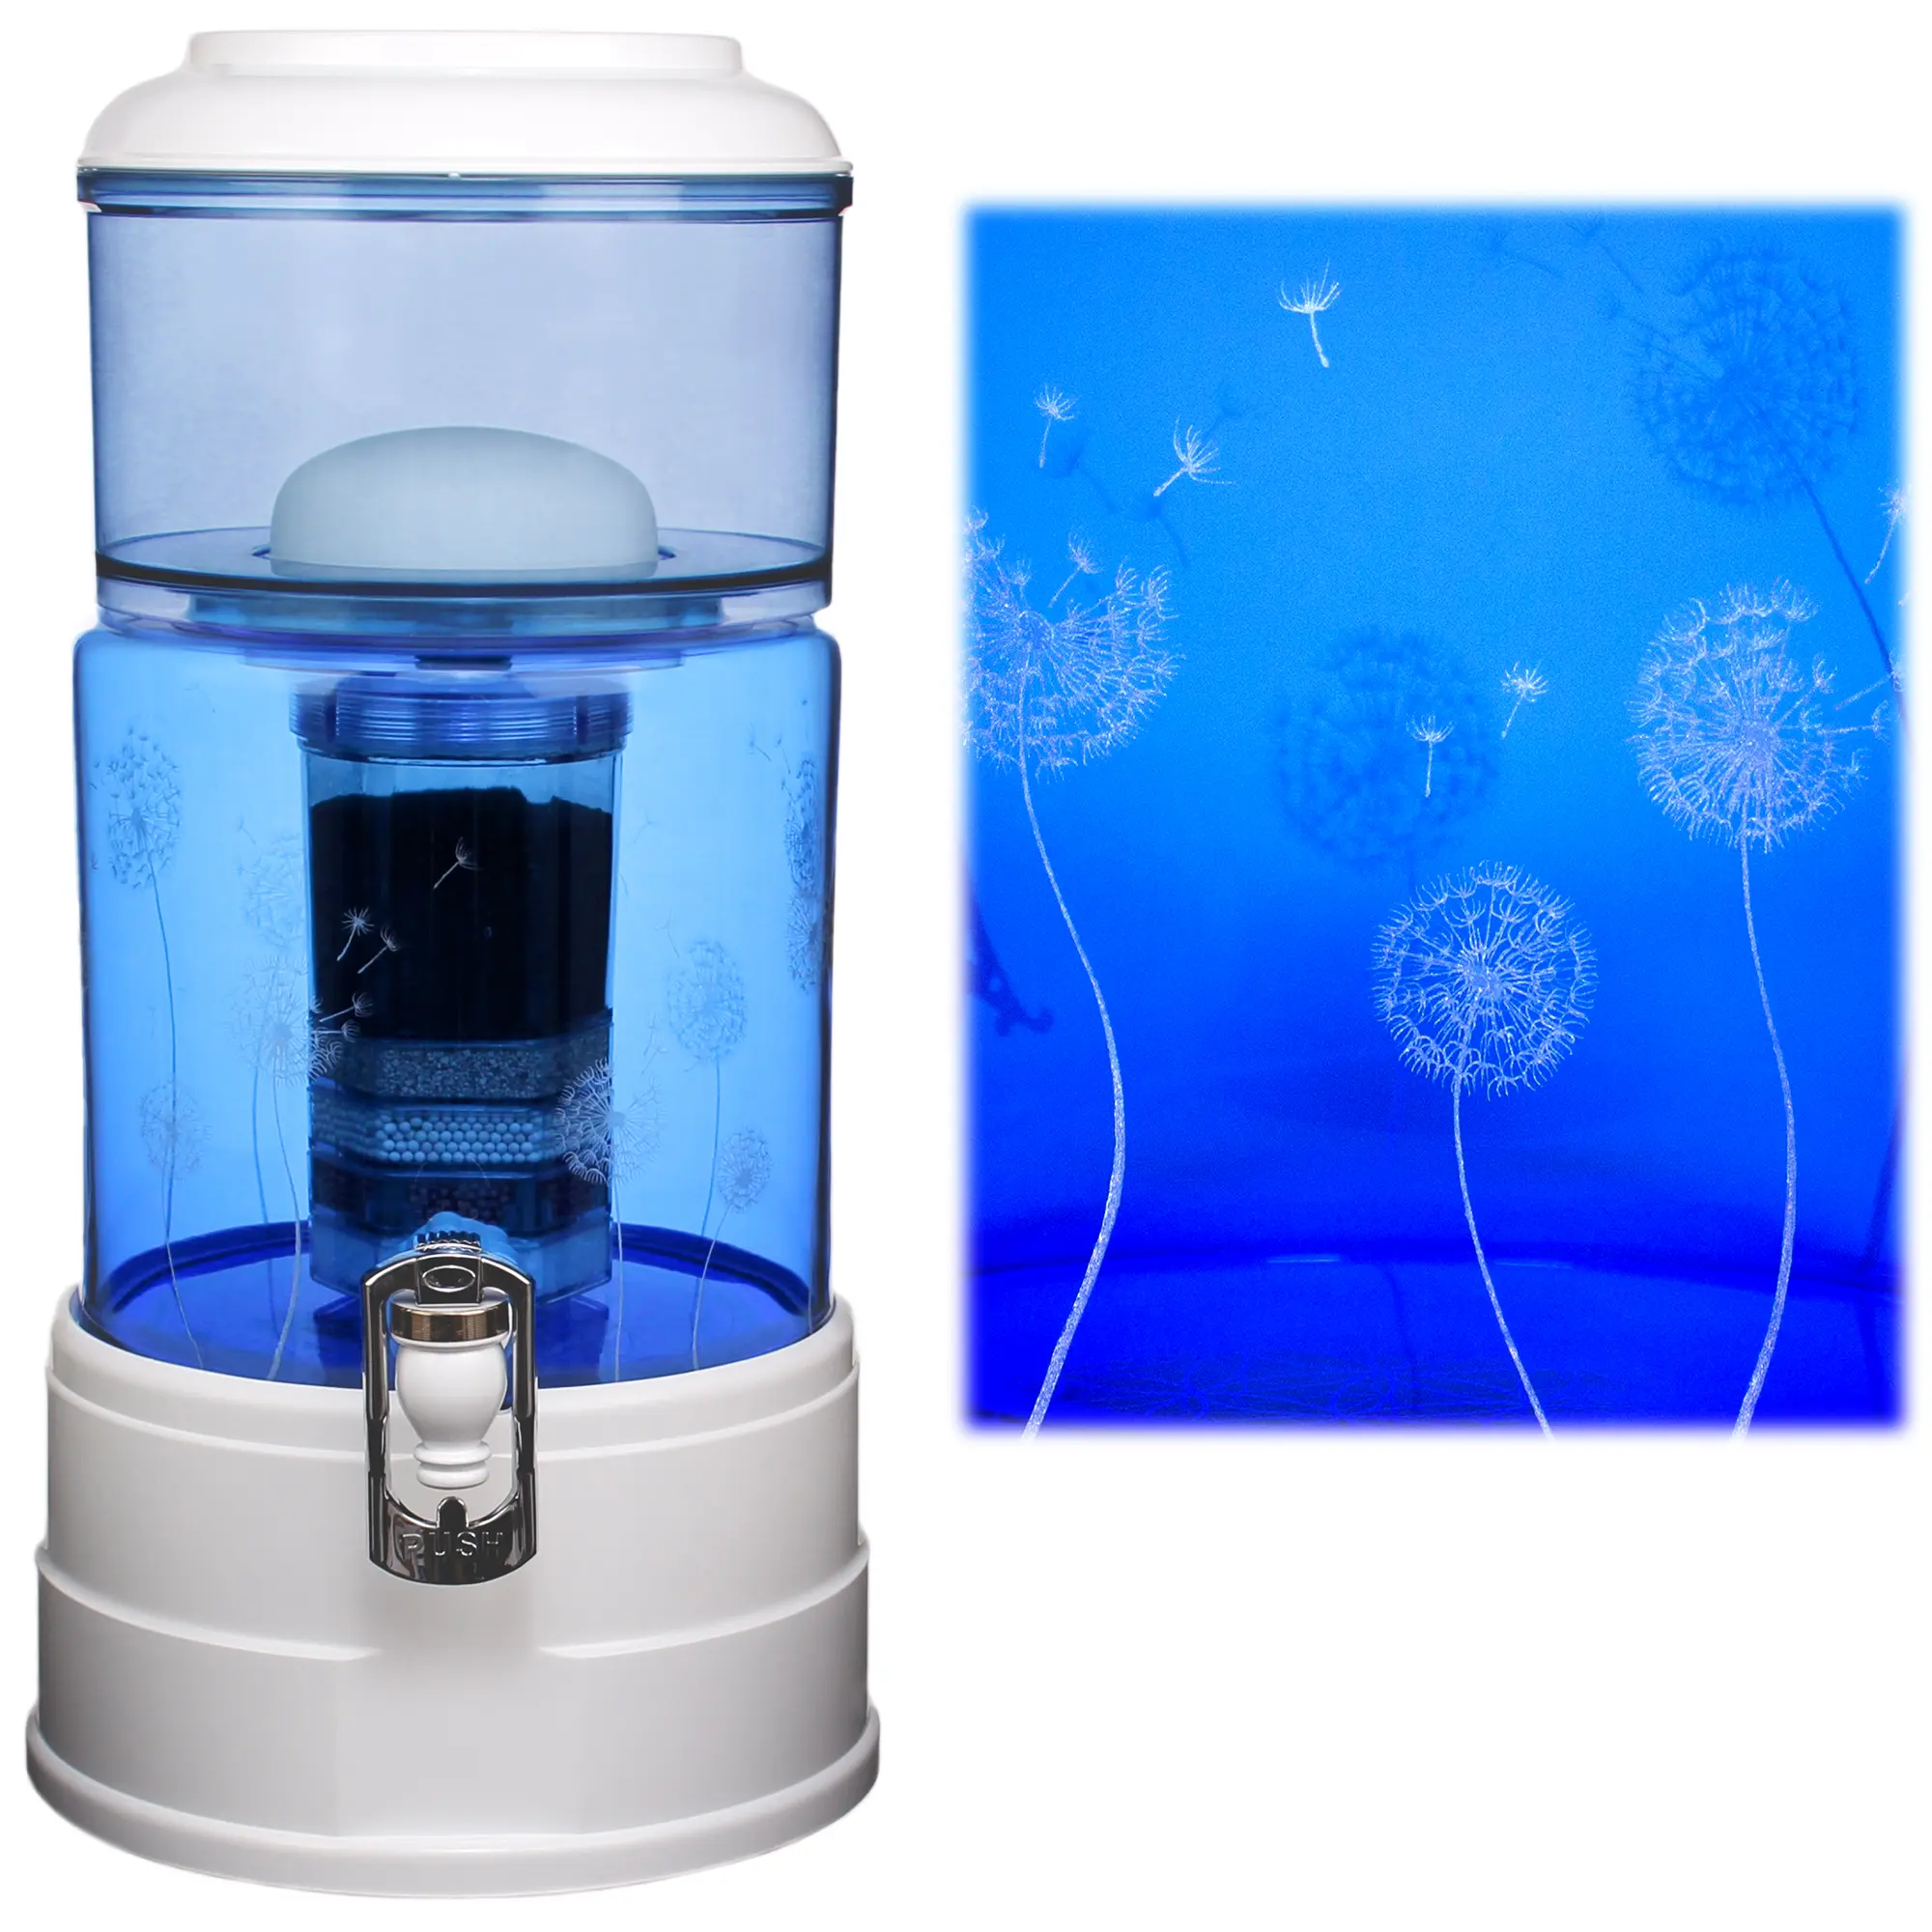 Ein Acala Wasserfilter Mini mit einer Handgravur. Die Gravur zeigt, auf blauem Glas, ganz viele Pusteblumen und einige samen die aus der Pusteblume herausfliegen.Rechts neben dem Wasserfilter ist eine Nahaufnahme der Gravur.